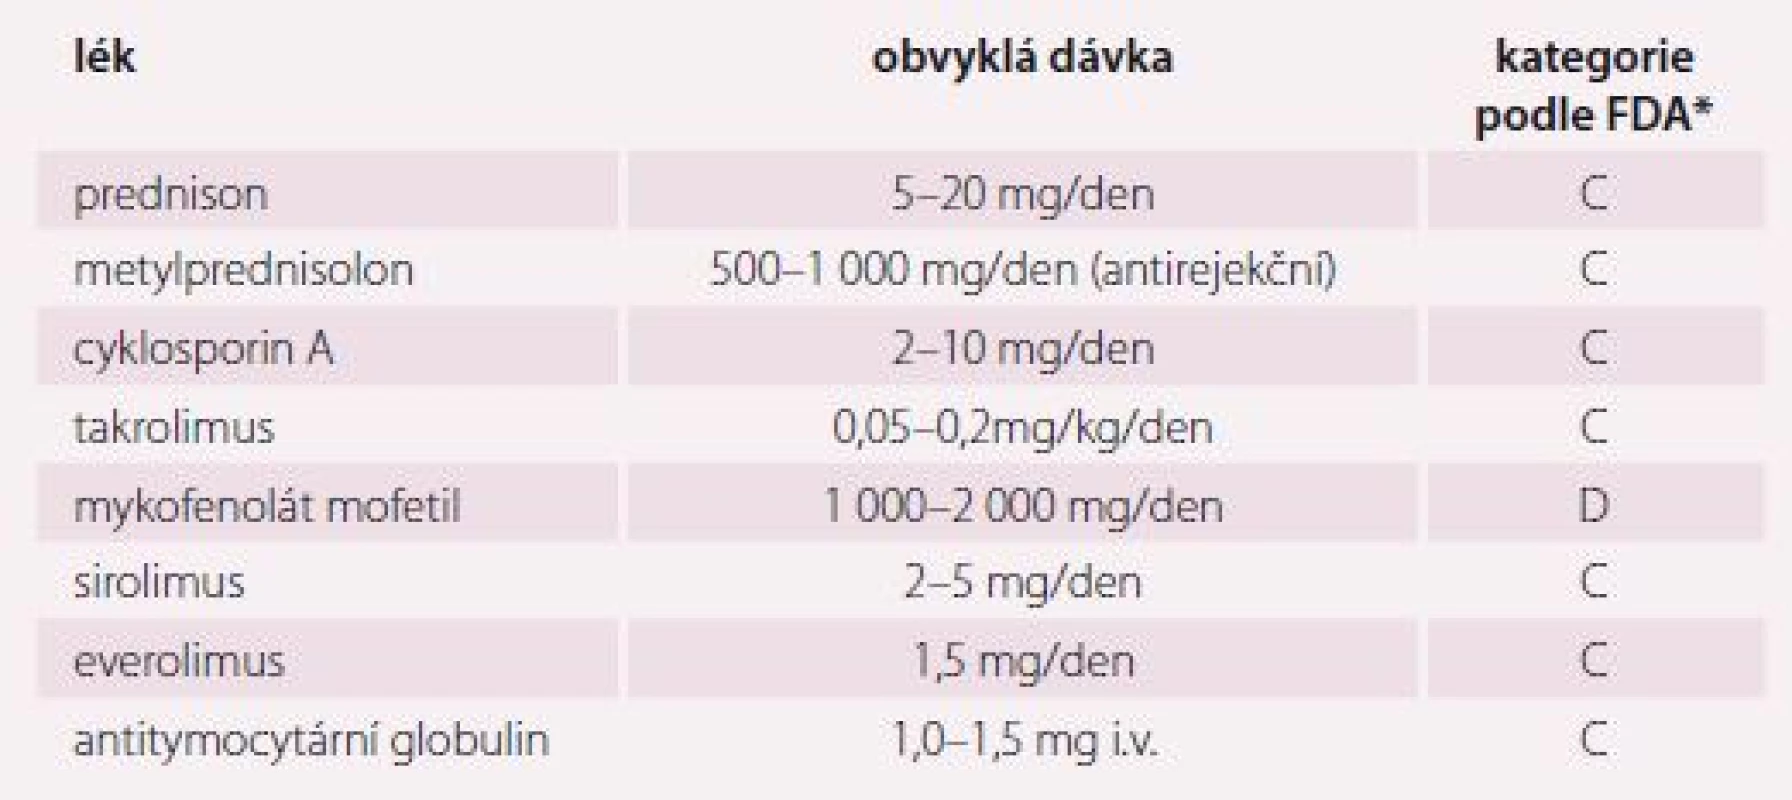 Přehled imunosupresiv používaných v profylaxi, indukční a akutní antirejekční terapii
a jejich klasifikace podle výše uvedených kriterií [14].